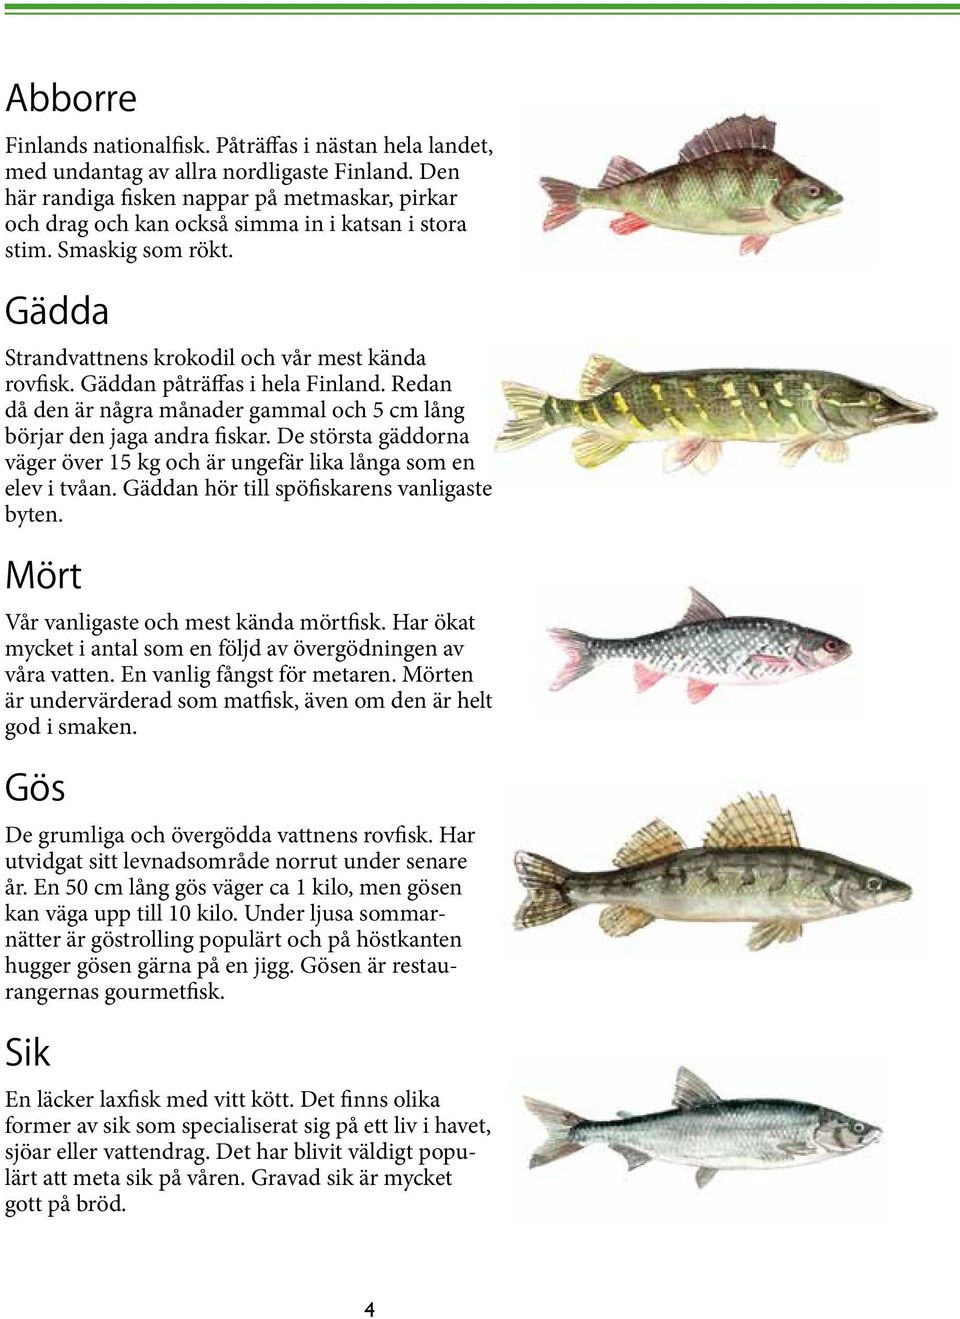 Gäddan påträffas i hela Finland. Redan då den är några månader gammal och 5 cm lång börjar den jaga andra fiskar. De största gäddorna väger över 15 kg och är ungefär lika långa som en elev i tvåan.